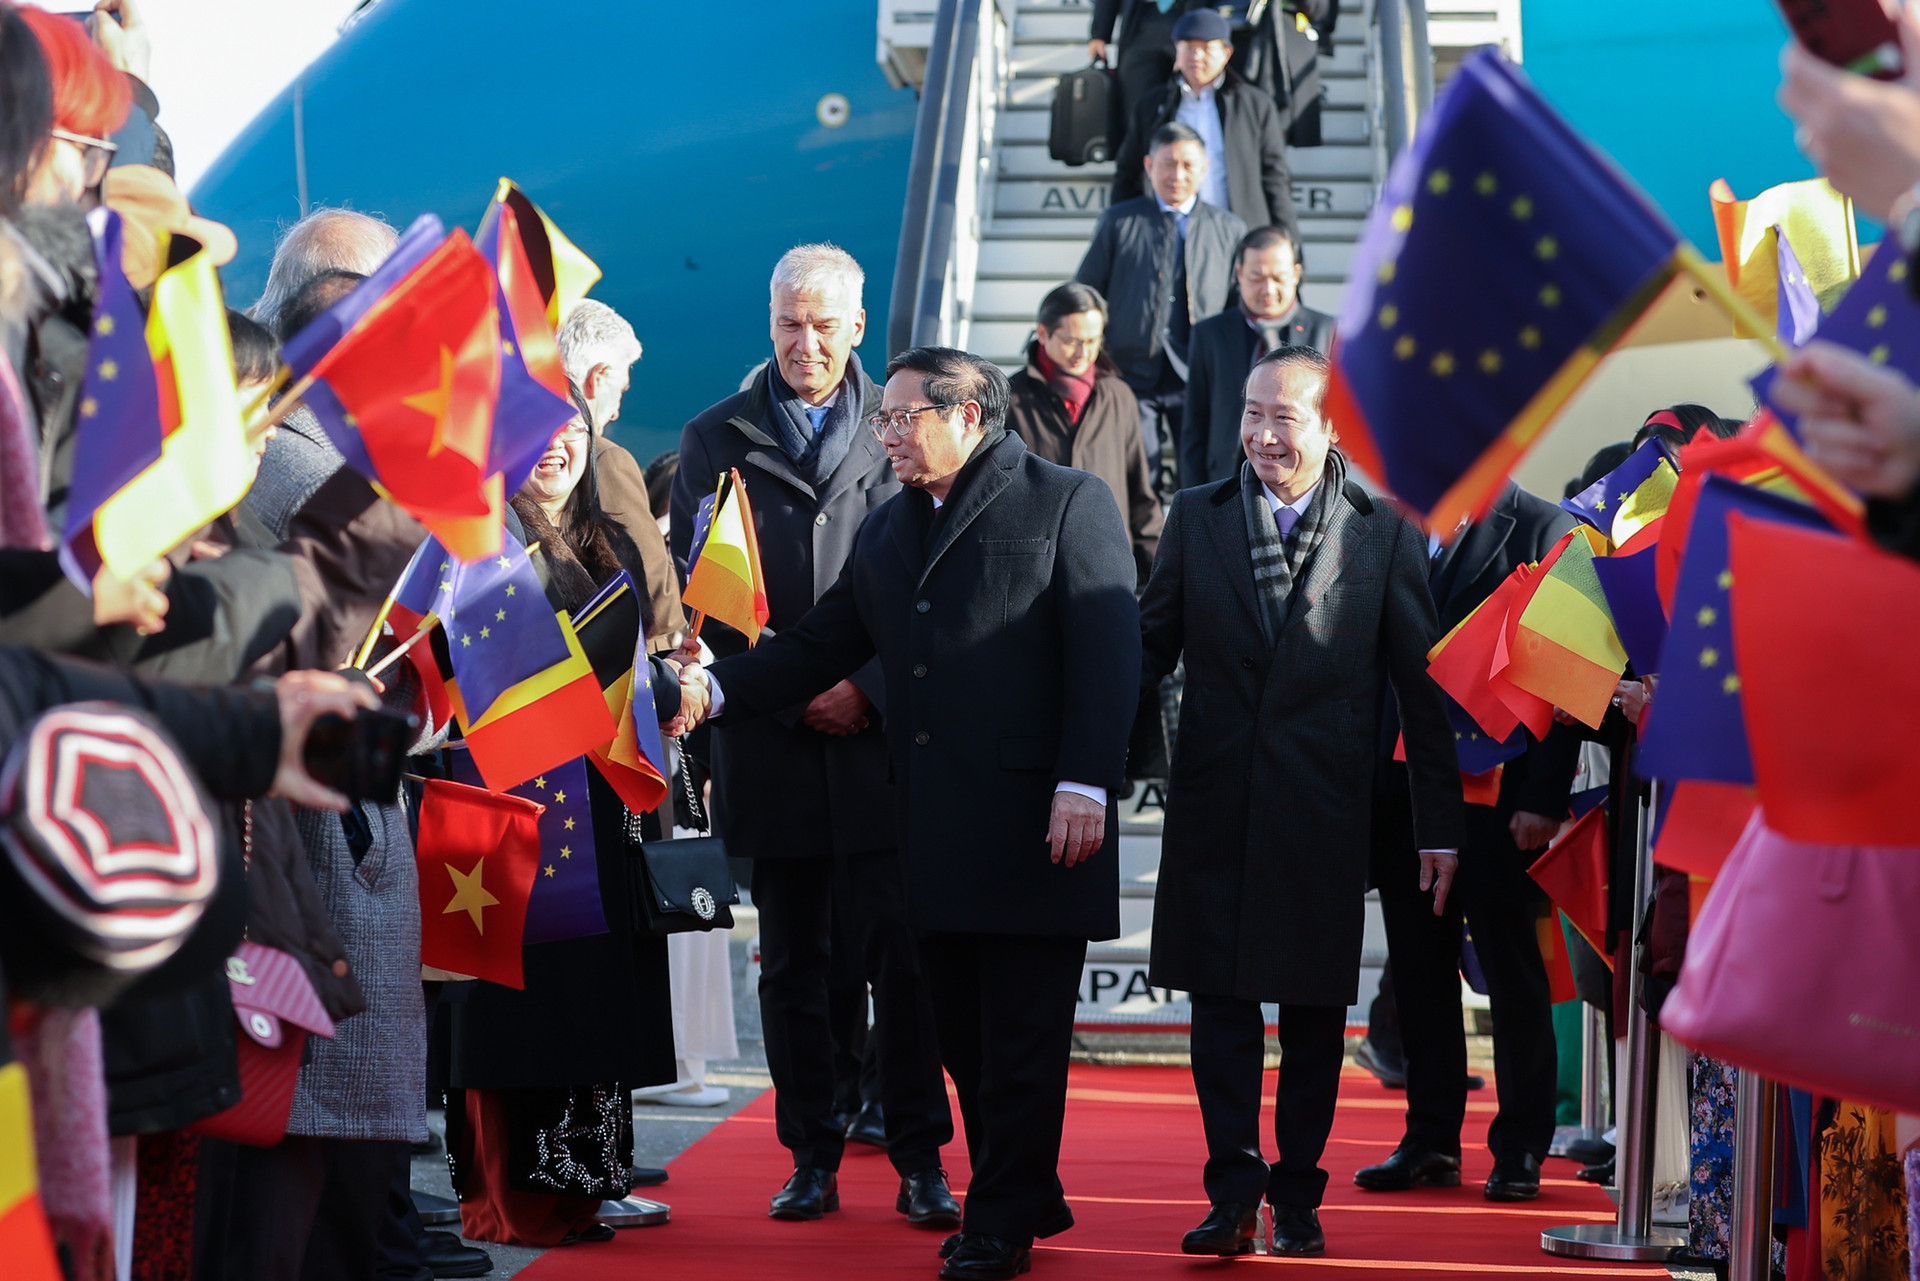 Thủ tướng bắt đầu chuyến thăm chính thức Vương quốc Bỉ và tham dự Hội nghị cấp cao ASEAN-EU - Ảnh 6.